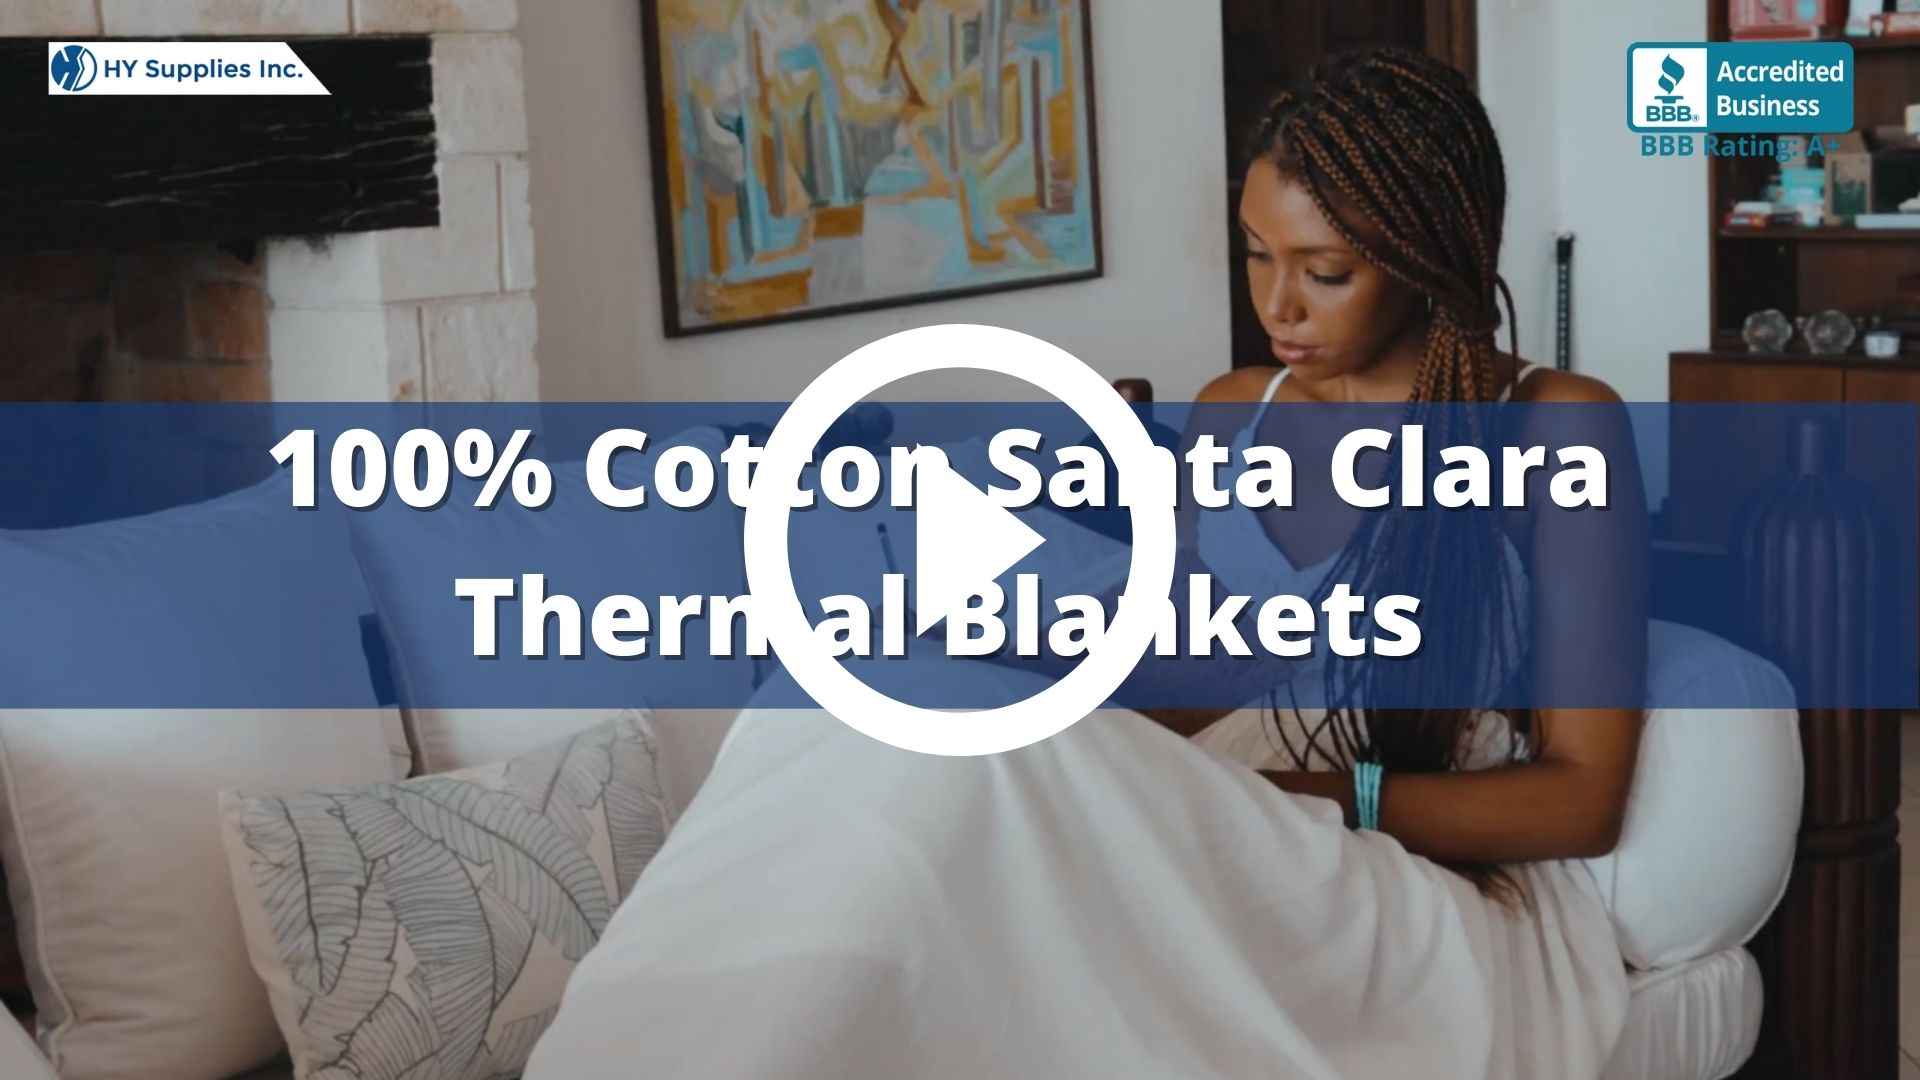 100% Cotton Santa Clara Thermal Blankets